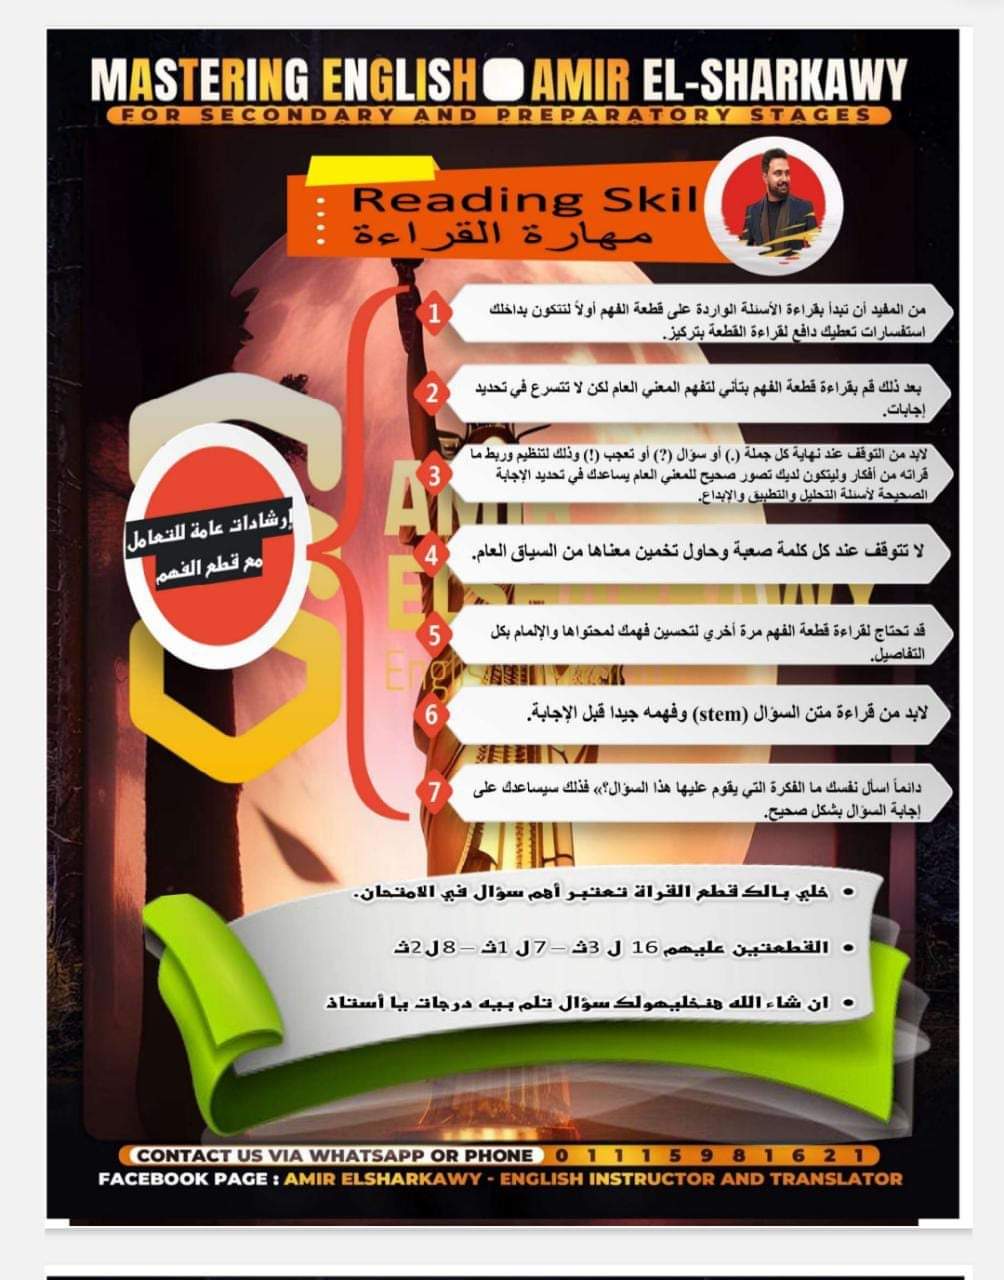 ملزمة مهارات القراءة اللغة الانجليزية لصفوف المرحلة الثانوية نظام حديث